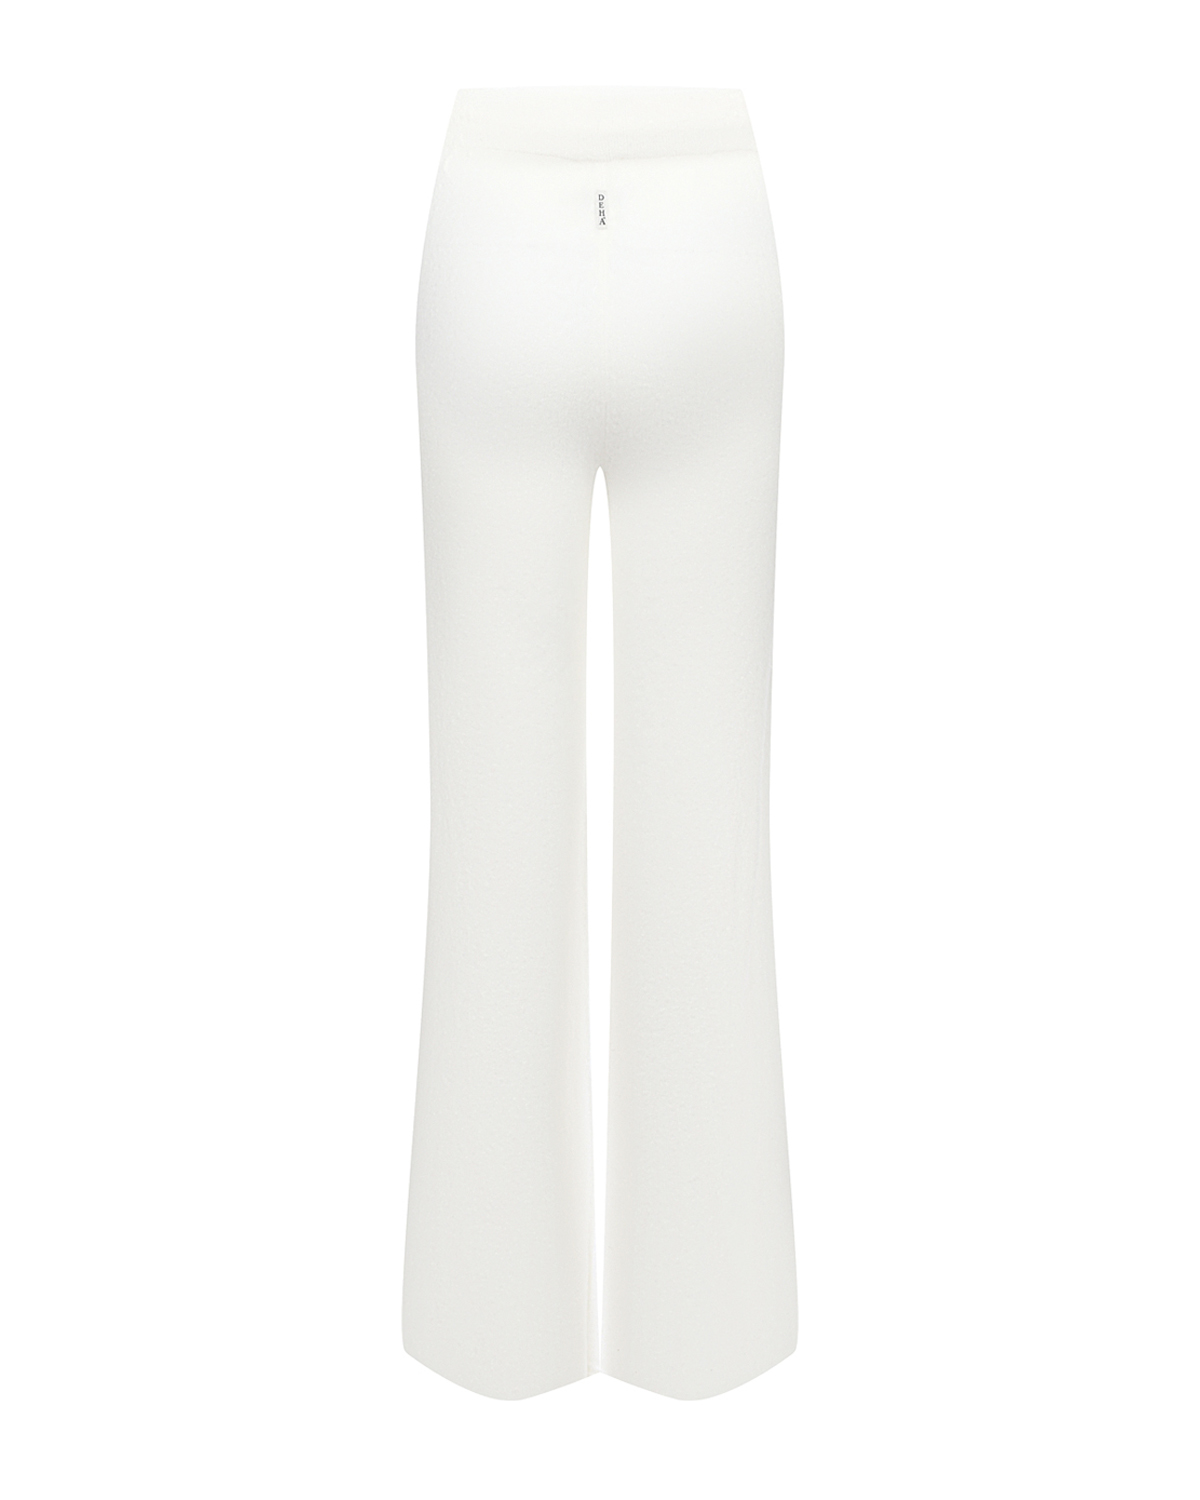 Белые трикотажные брюки Deha, размер 38, цвет белый - фото 5